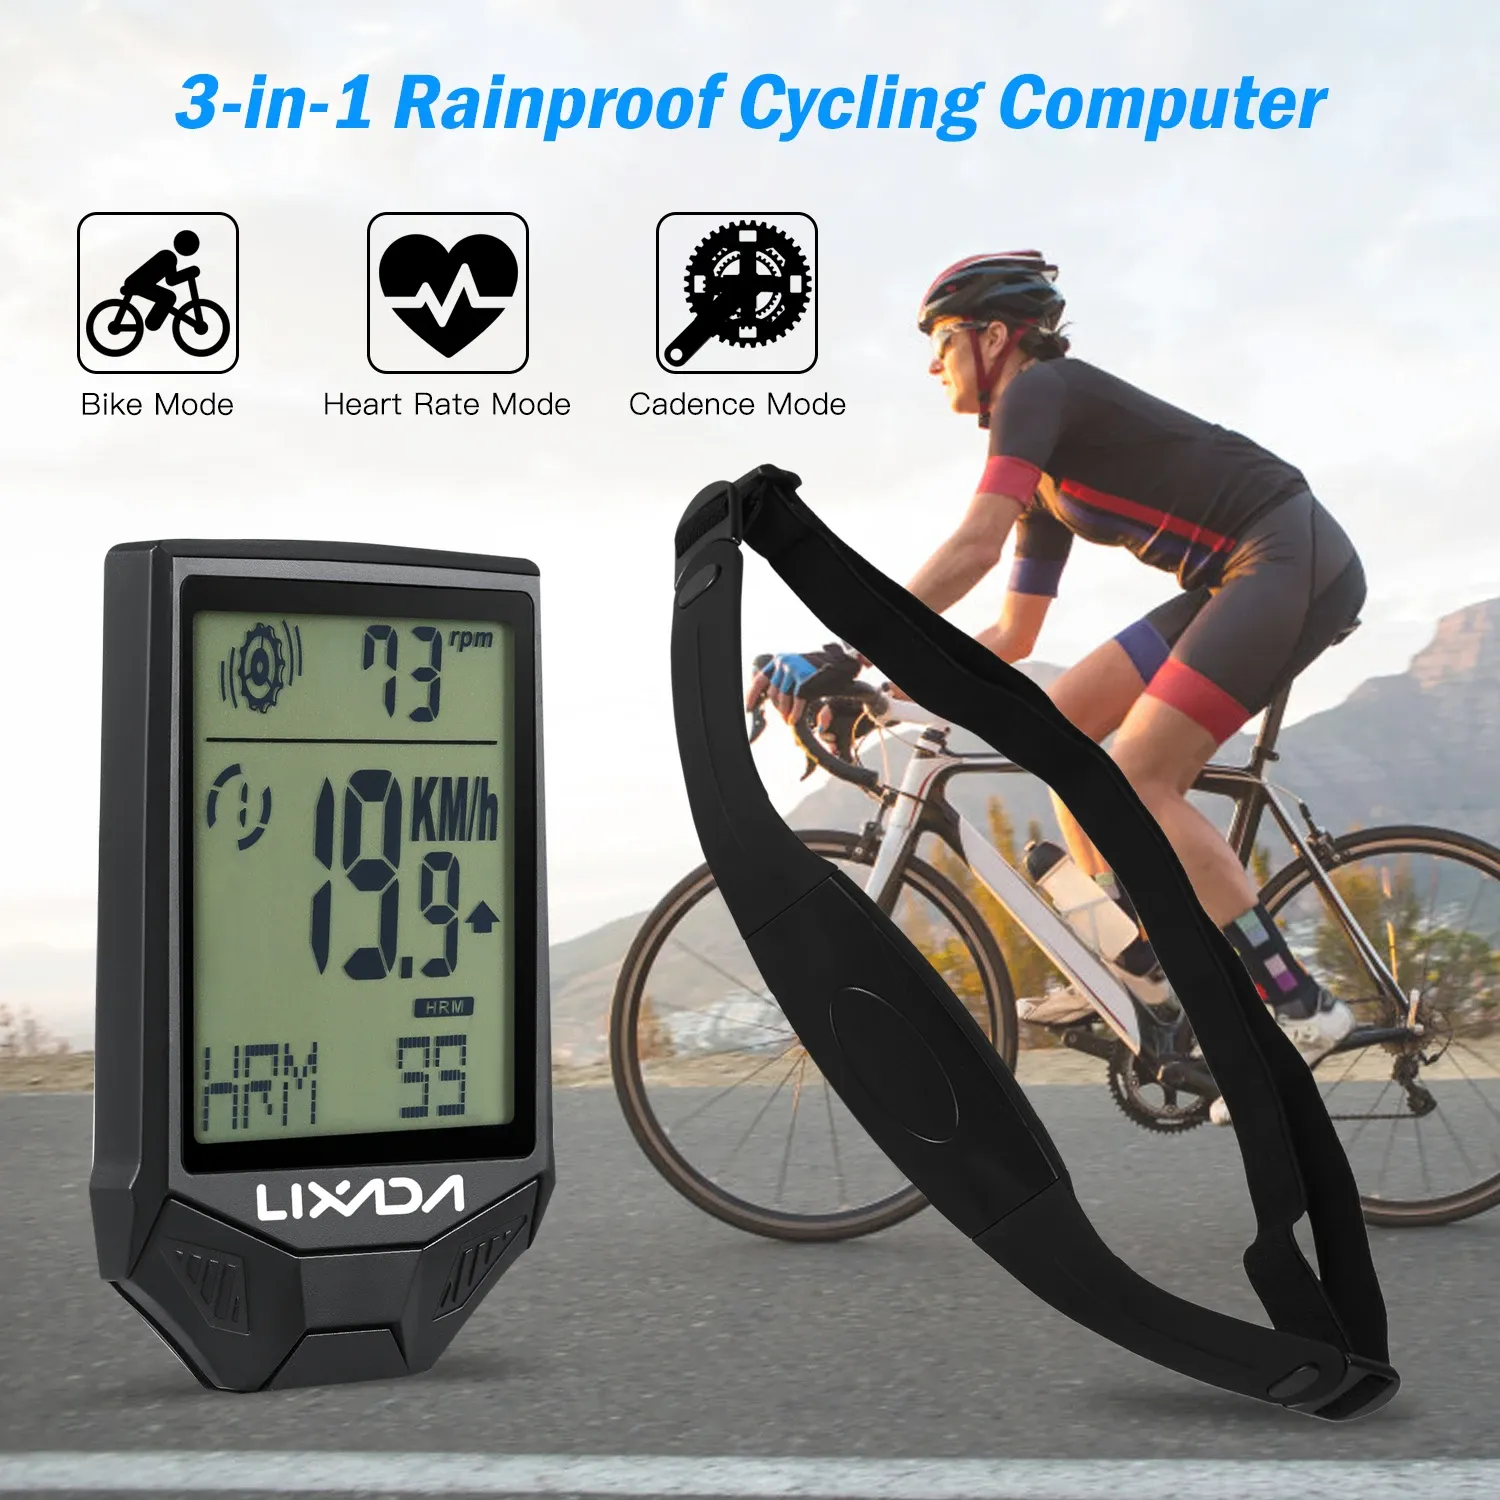 Datorer LIXADA Cykeldator Multifunktionell Rainprocess Cycling Computer Backlight LCD Bike Speedometer Trådlös hjärtfrekvenssensor